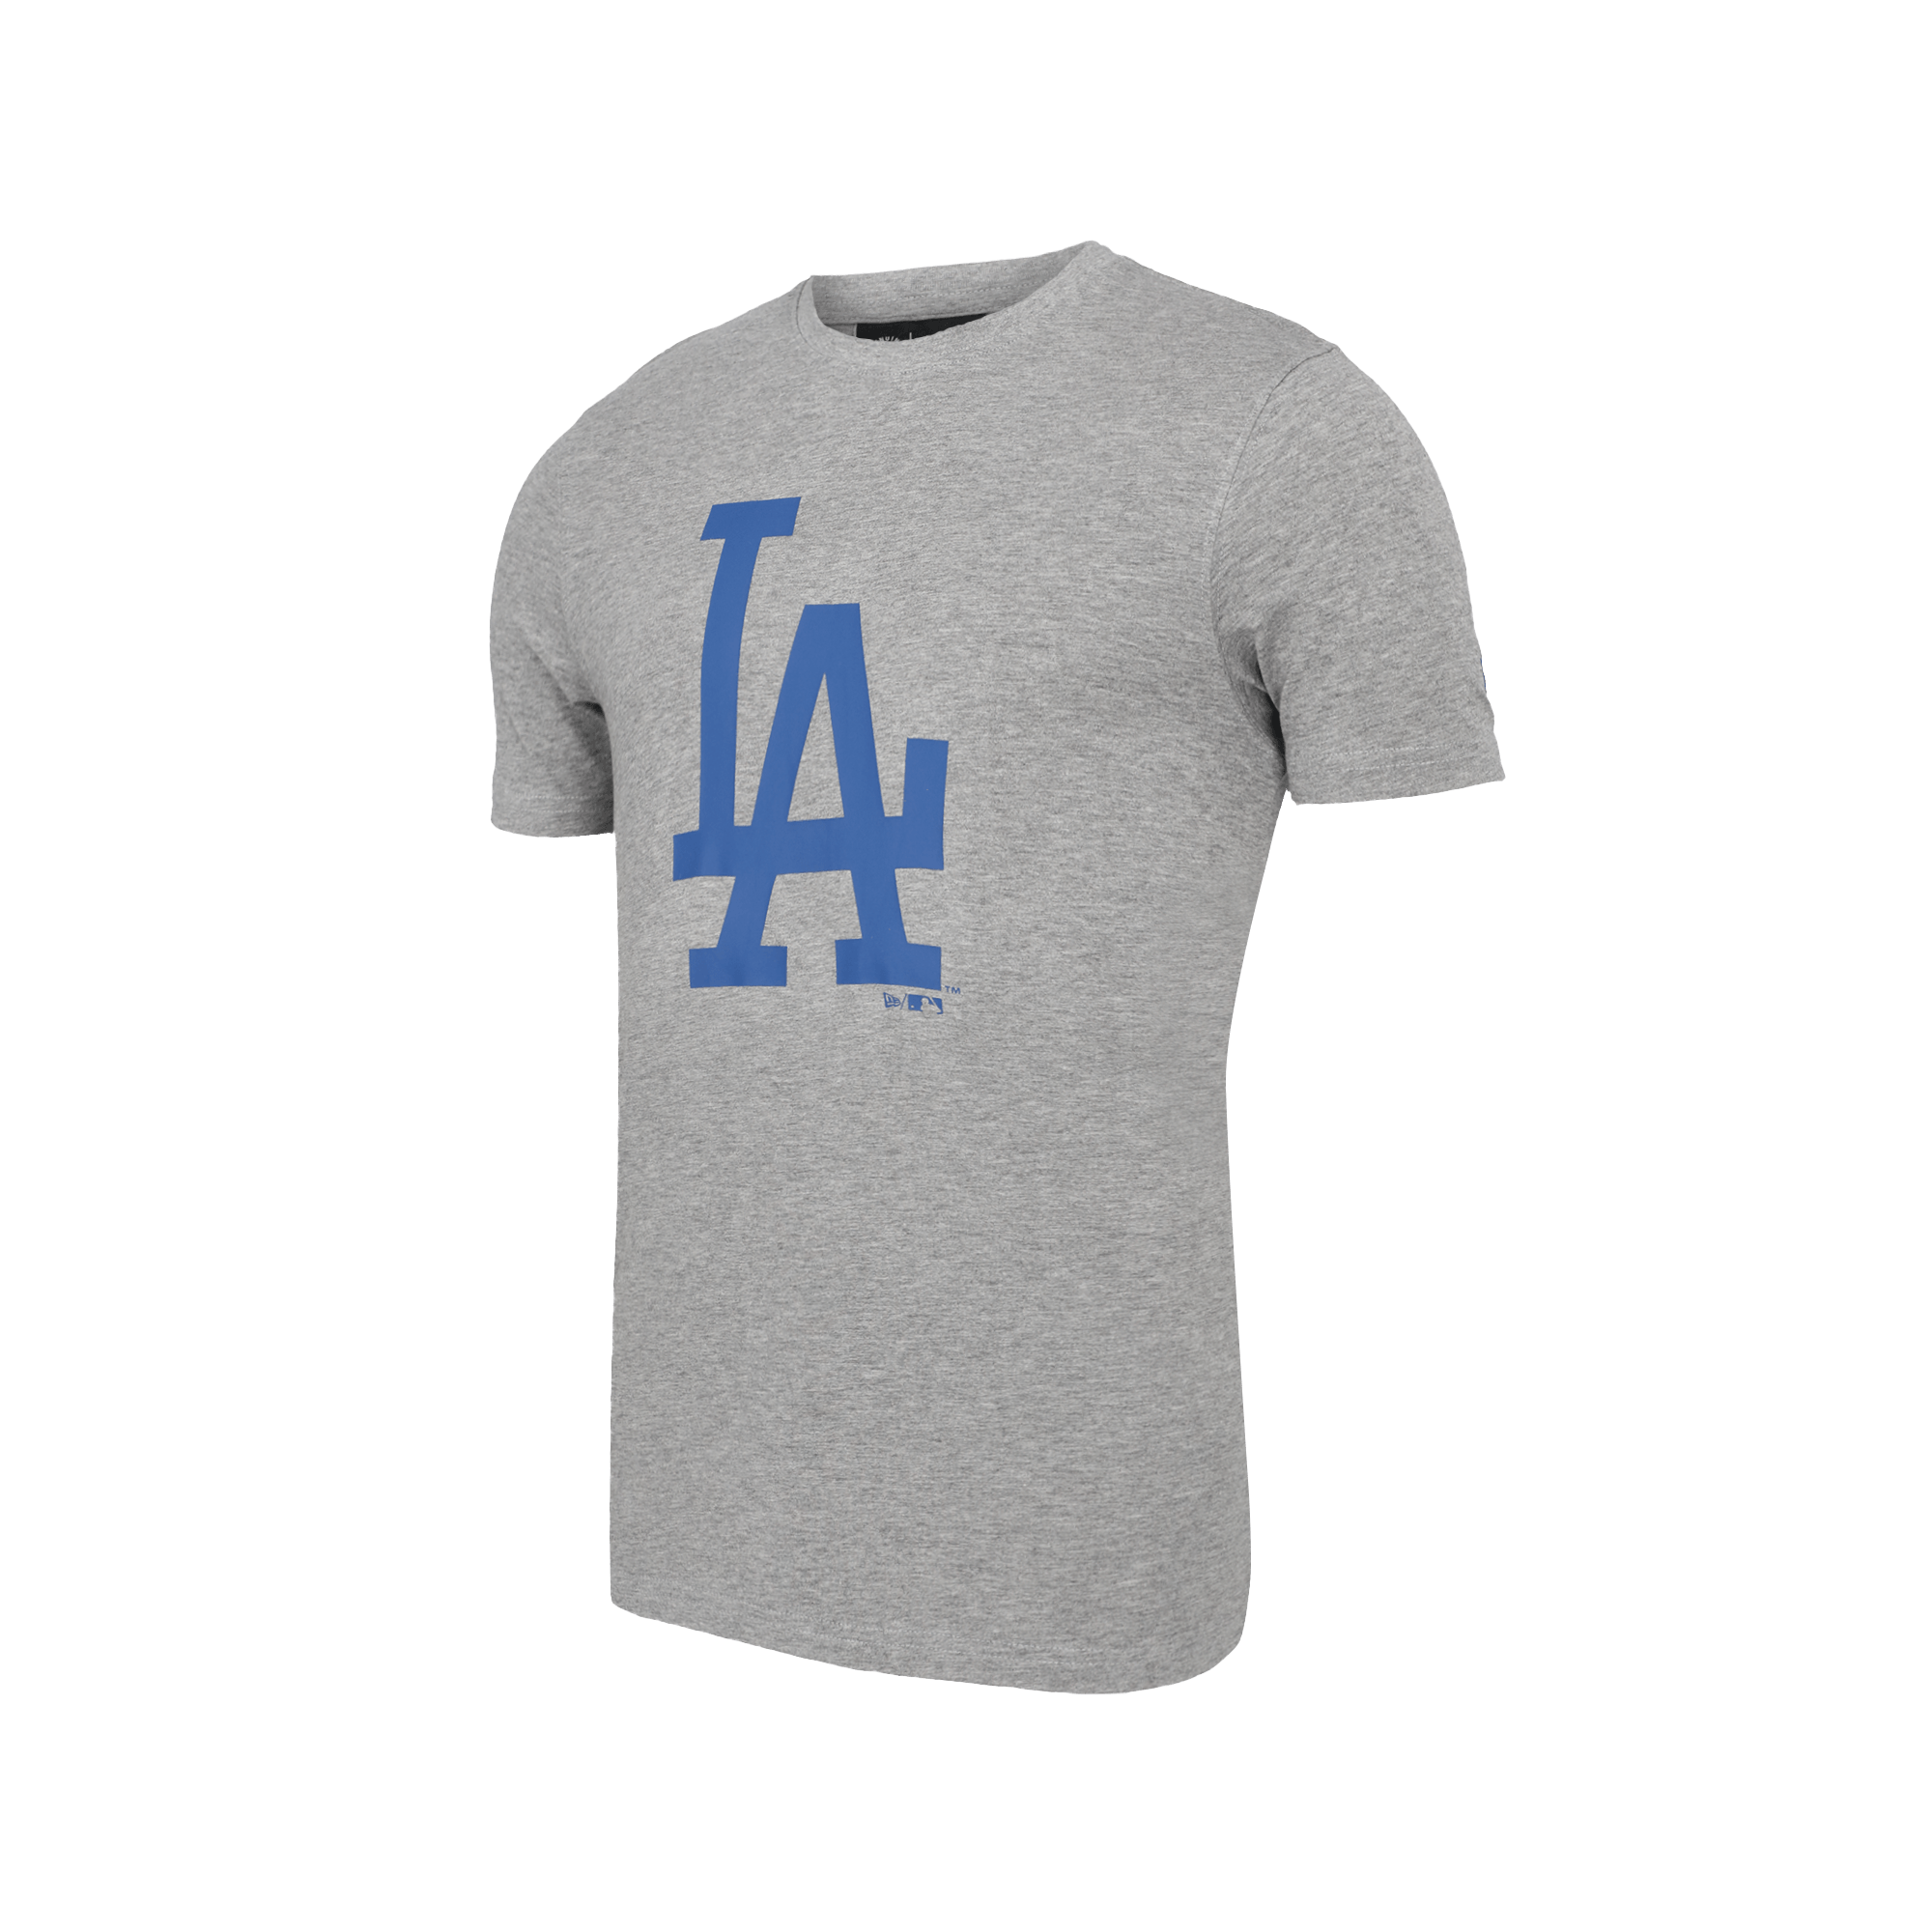 Los Angeles Dodgers camisetas oficiales, Dodgers Camisetas de